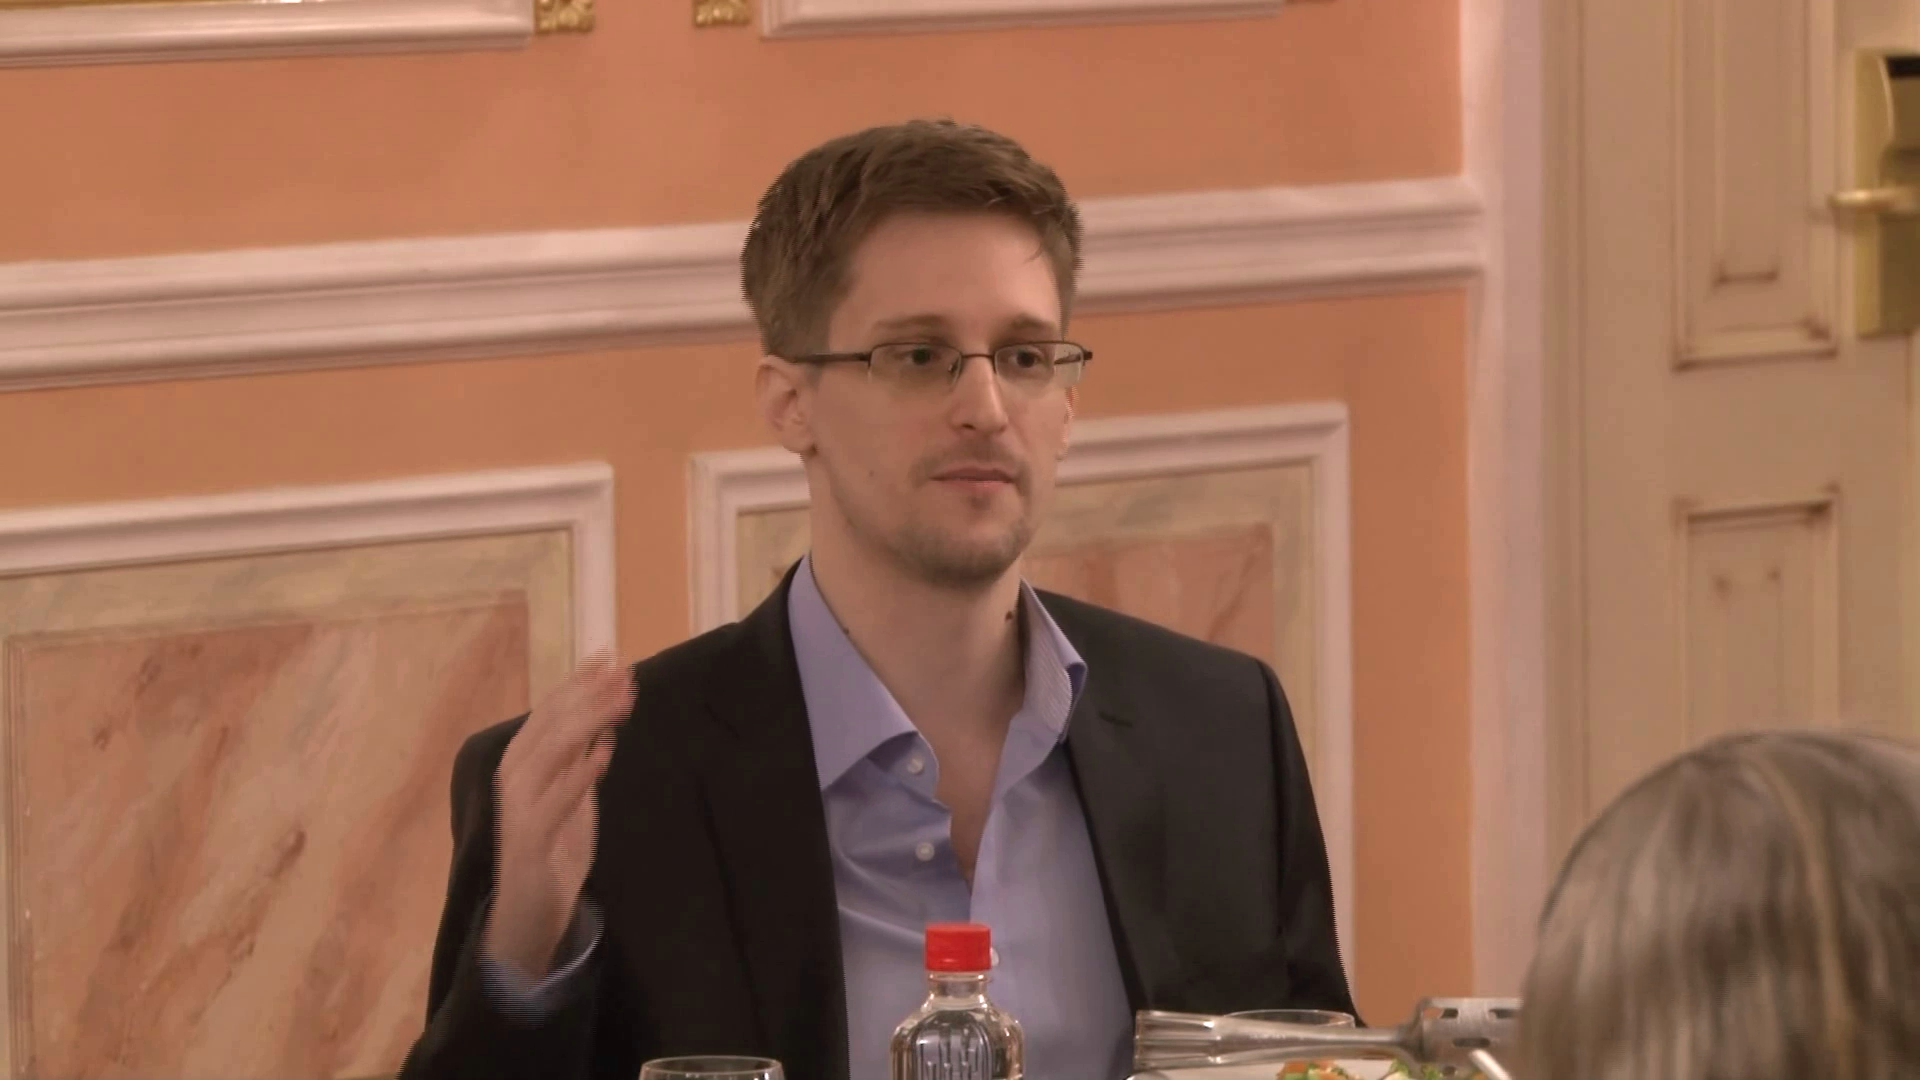 Auf dem Bild ist Edward Snowden zu sehen